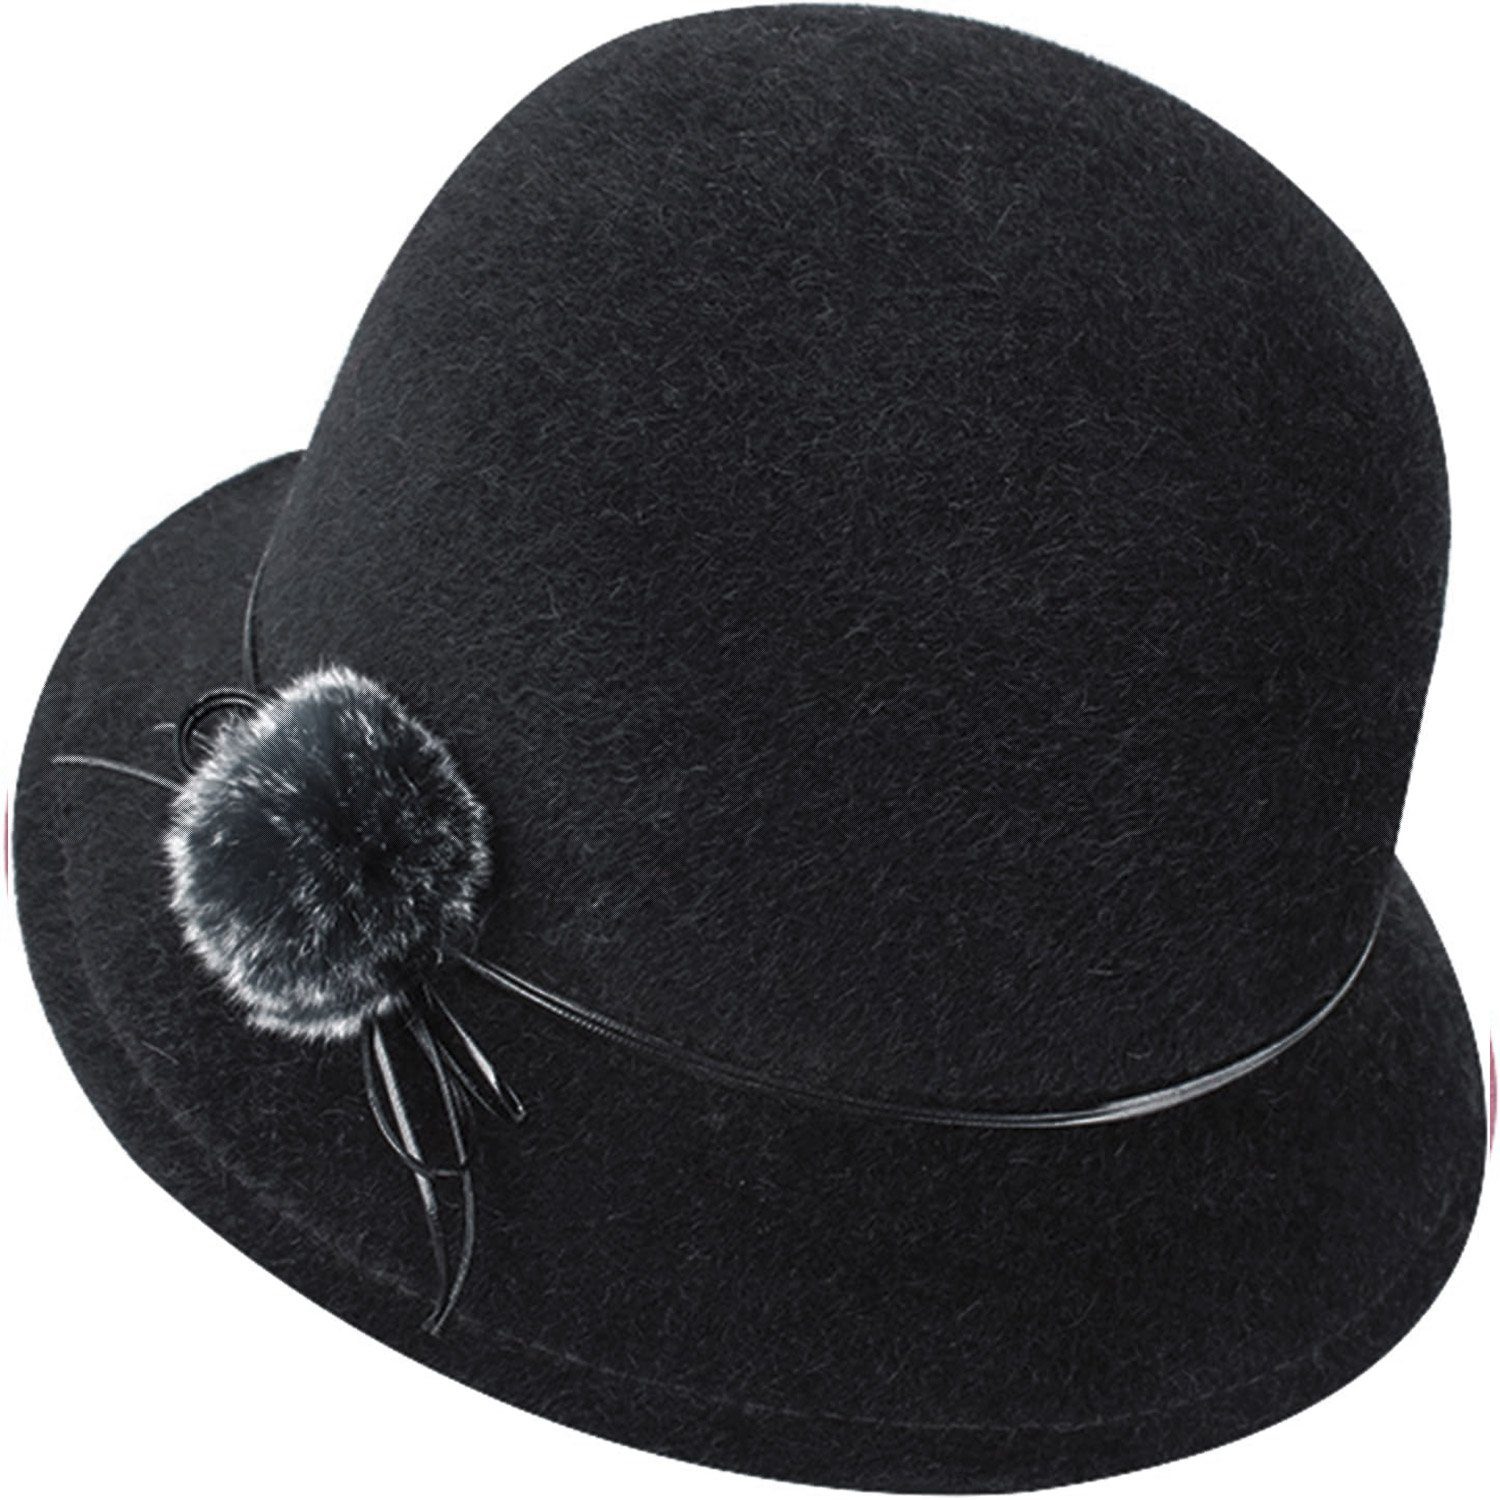 Für Hut,Eleganter Wintermütze Wollfilz schwarz Fedora Mütze Klassisch MAGICSHE Frauen Filzhut